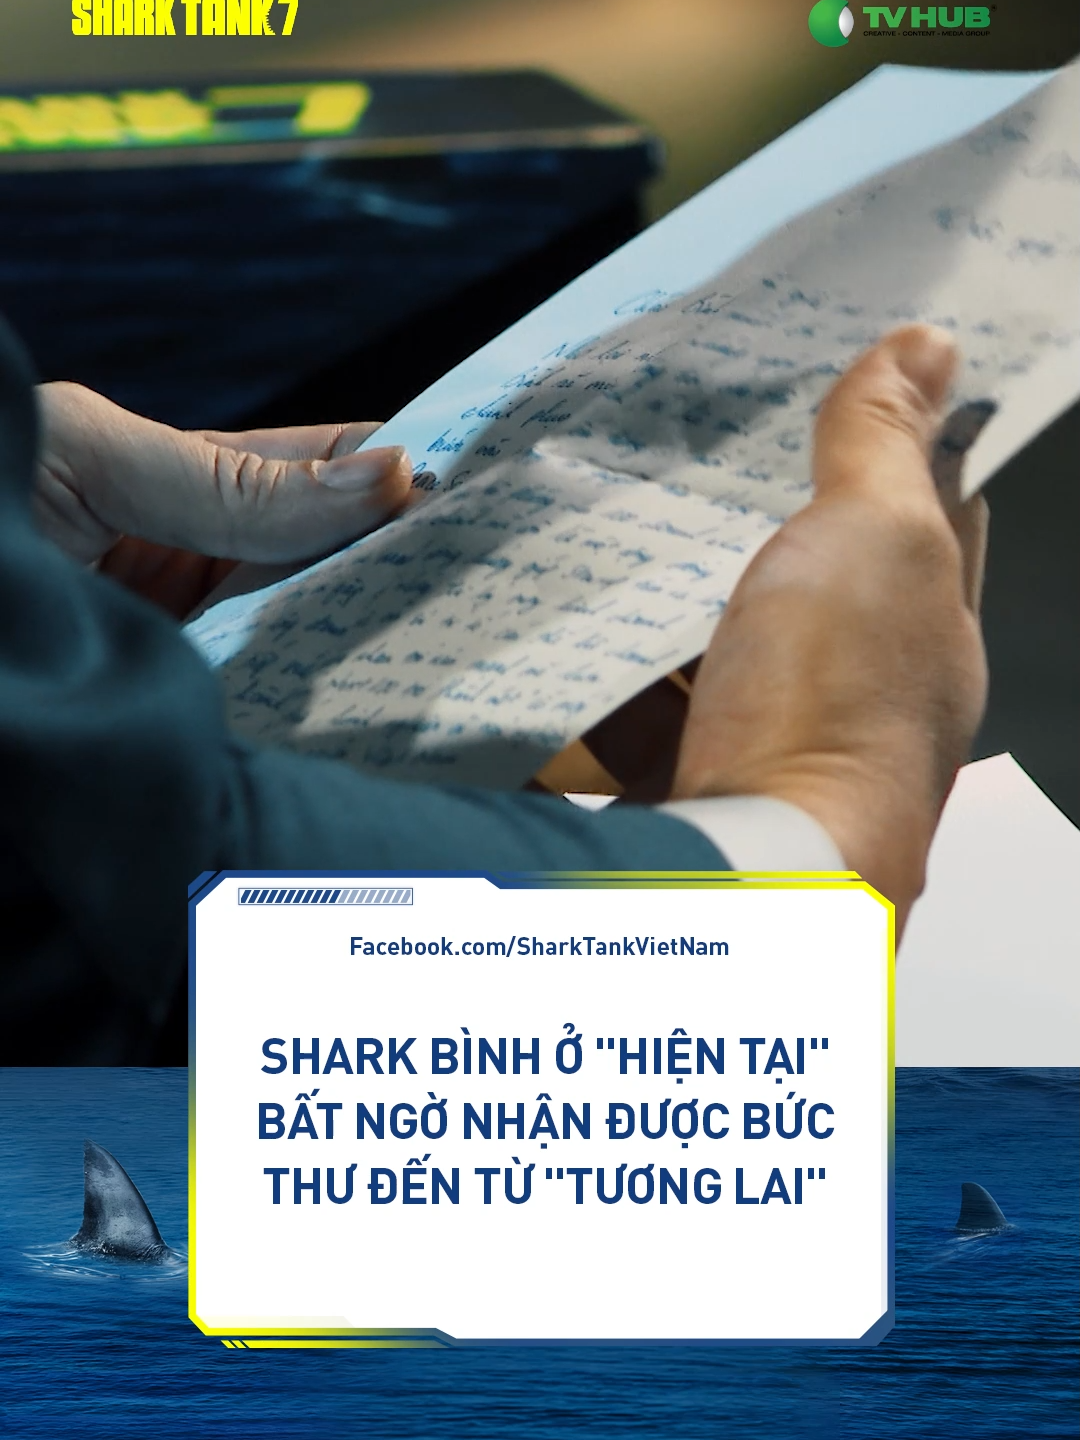 Hóa ra người viết thư... lại không phải là ai xa lạ 😅#sharktankvietnam7 #tiktokgiaitri #foryou #sharkbinh